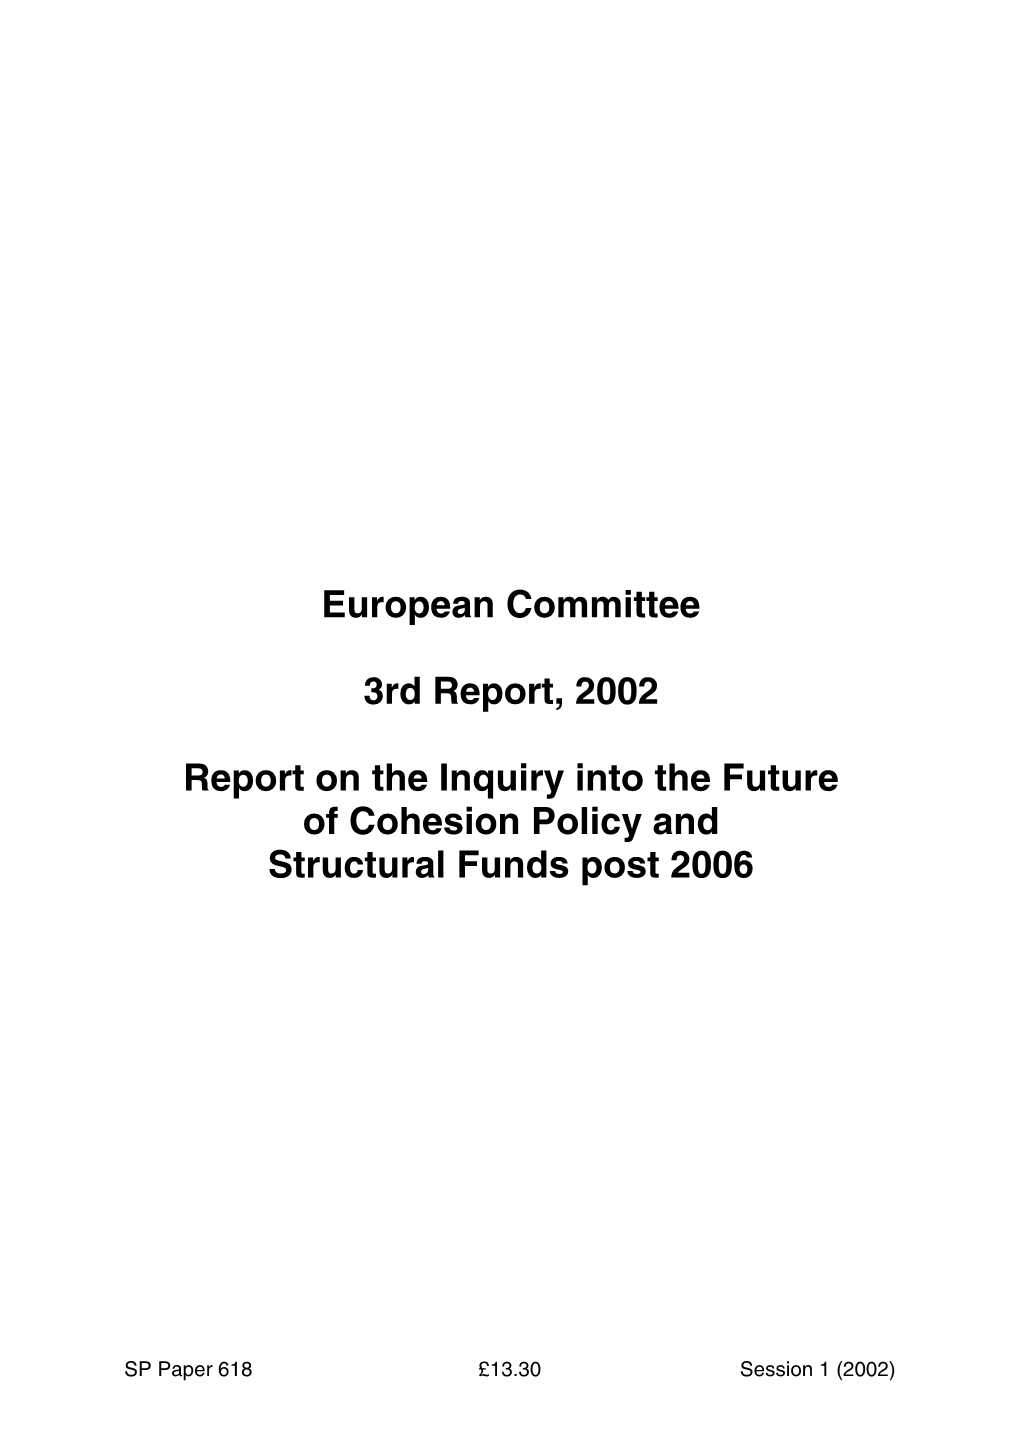 Scottish Parliament Report